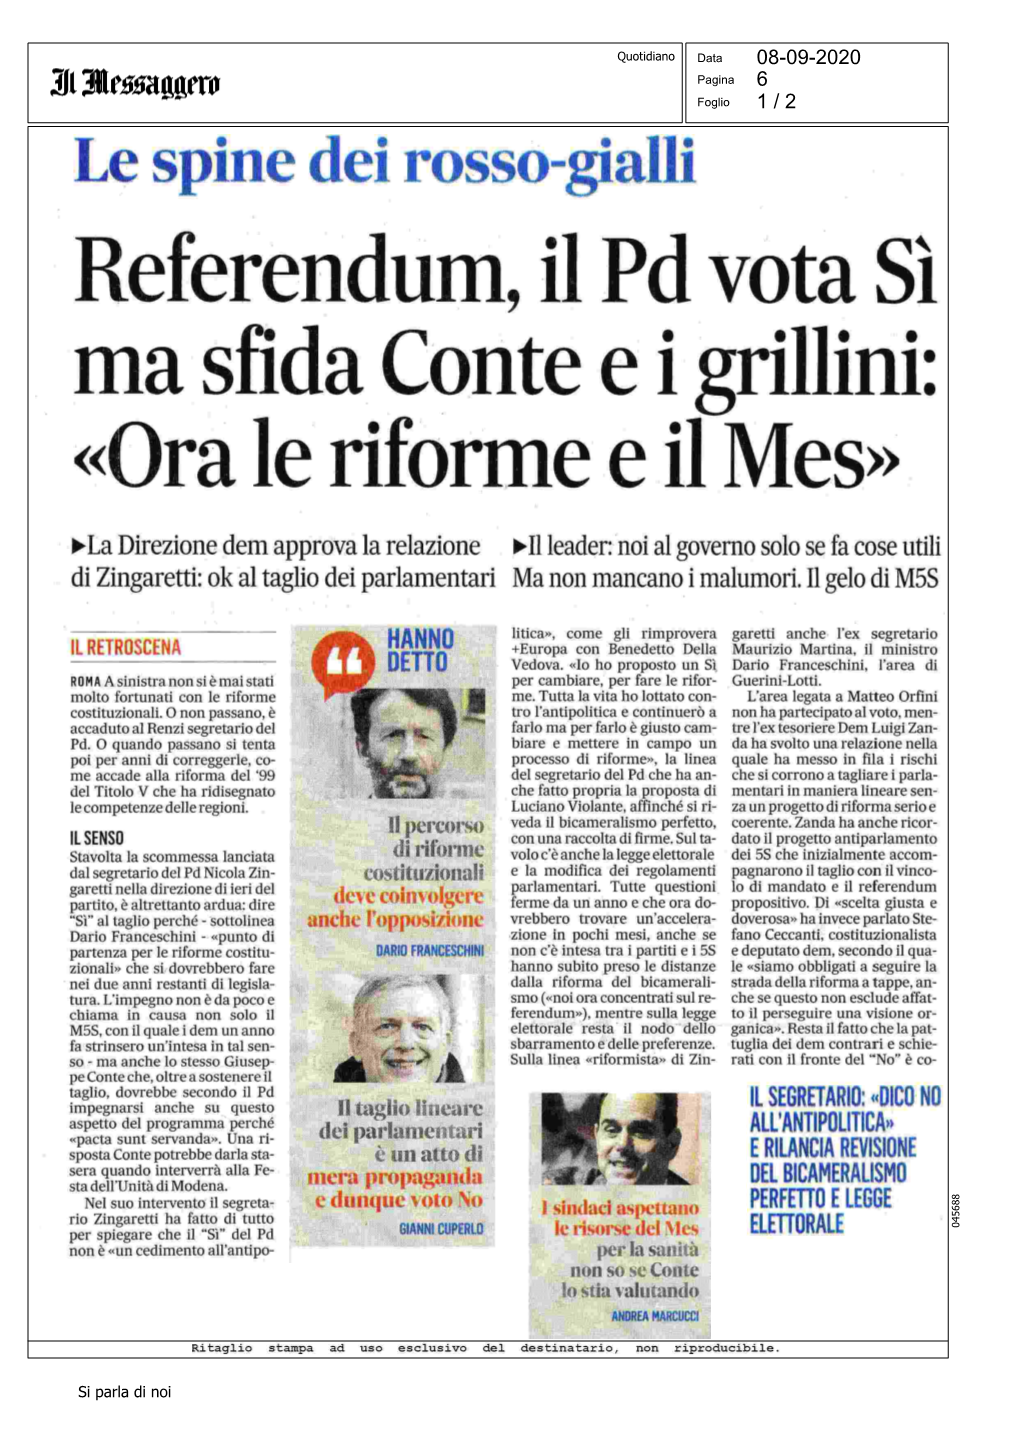 Referendum, Il Pd Vota Si Ma Sfida Conte Ei Grillini: «Ora Le